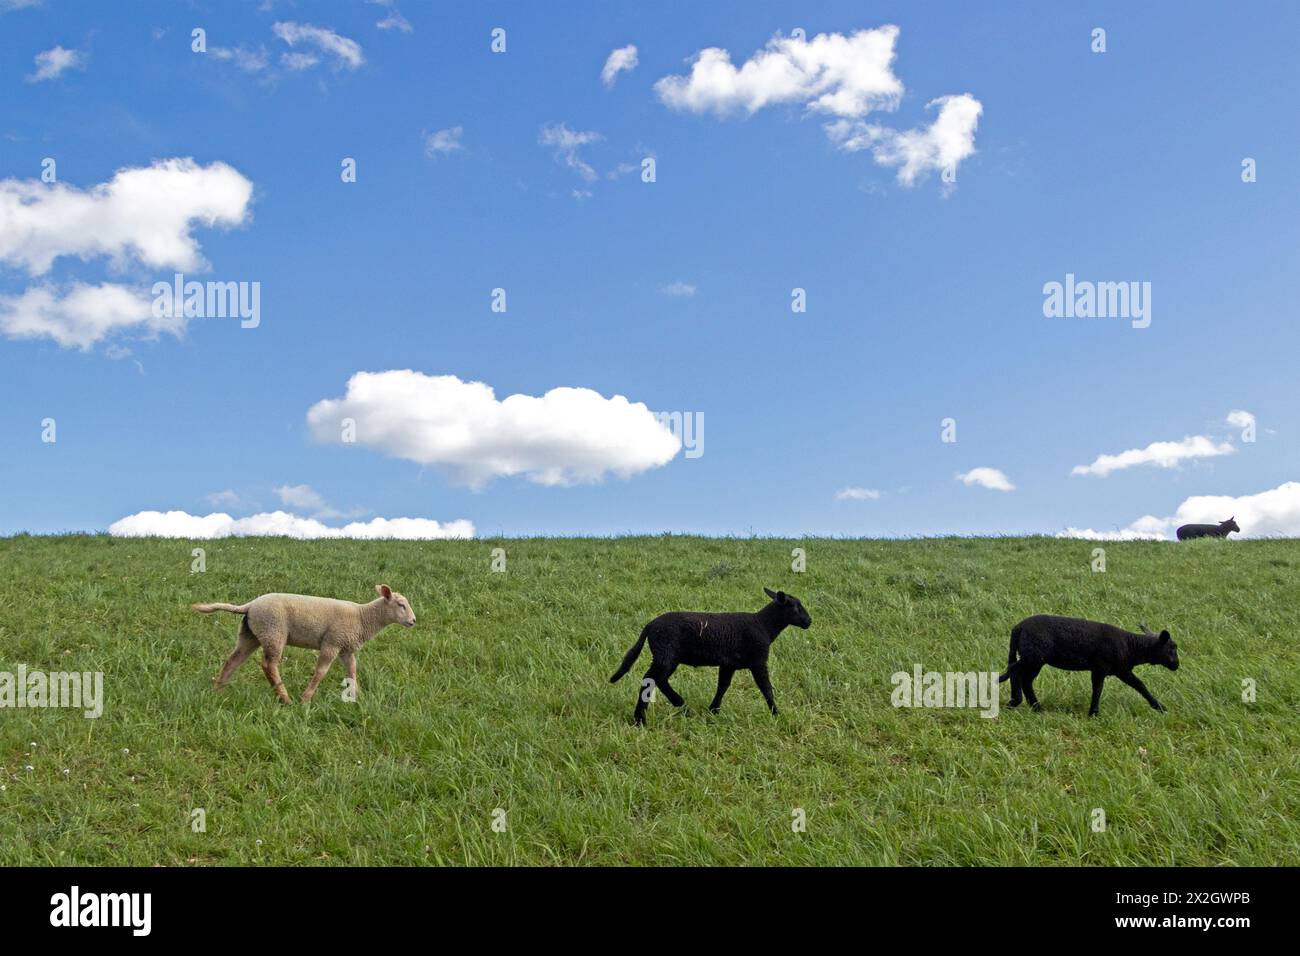 Agneaux, noir et blanc, moutons, digue de l'Elbe près de Bleckede, basse-Saxe, Allemagne Banque D'Images